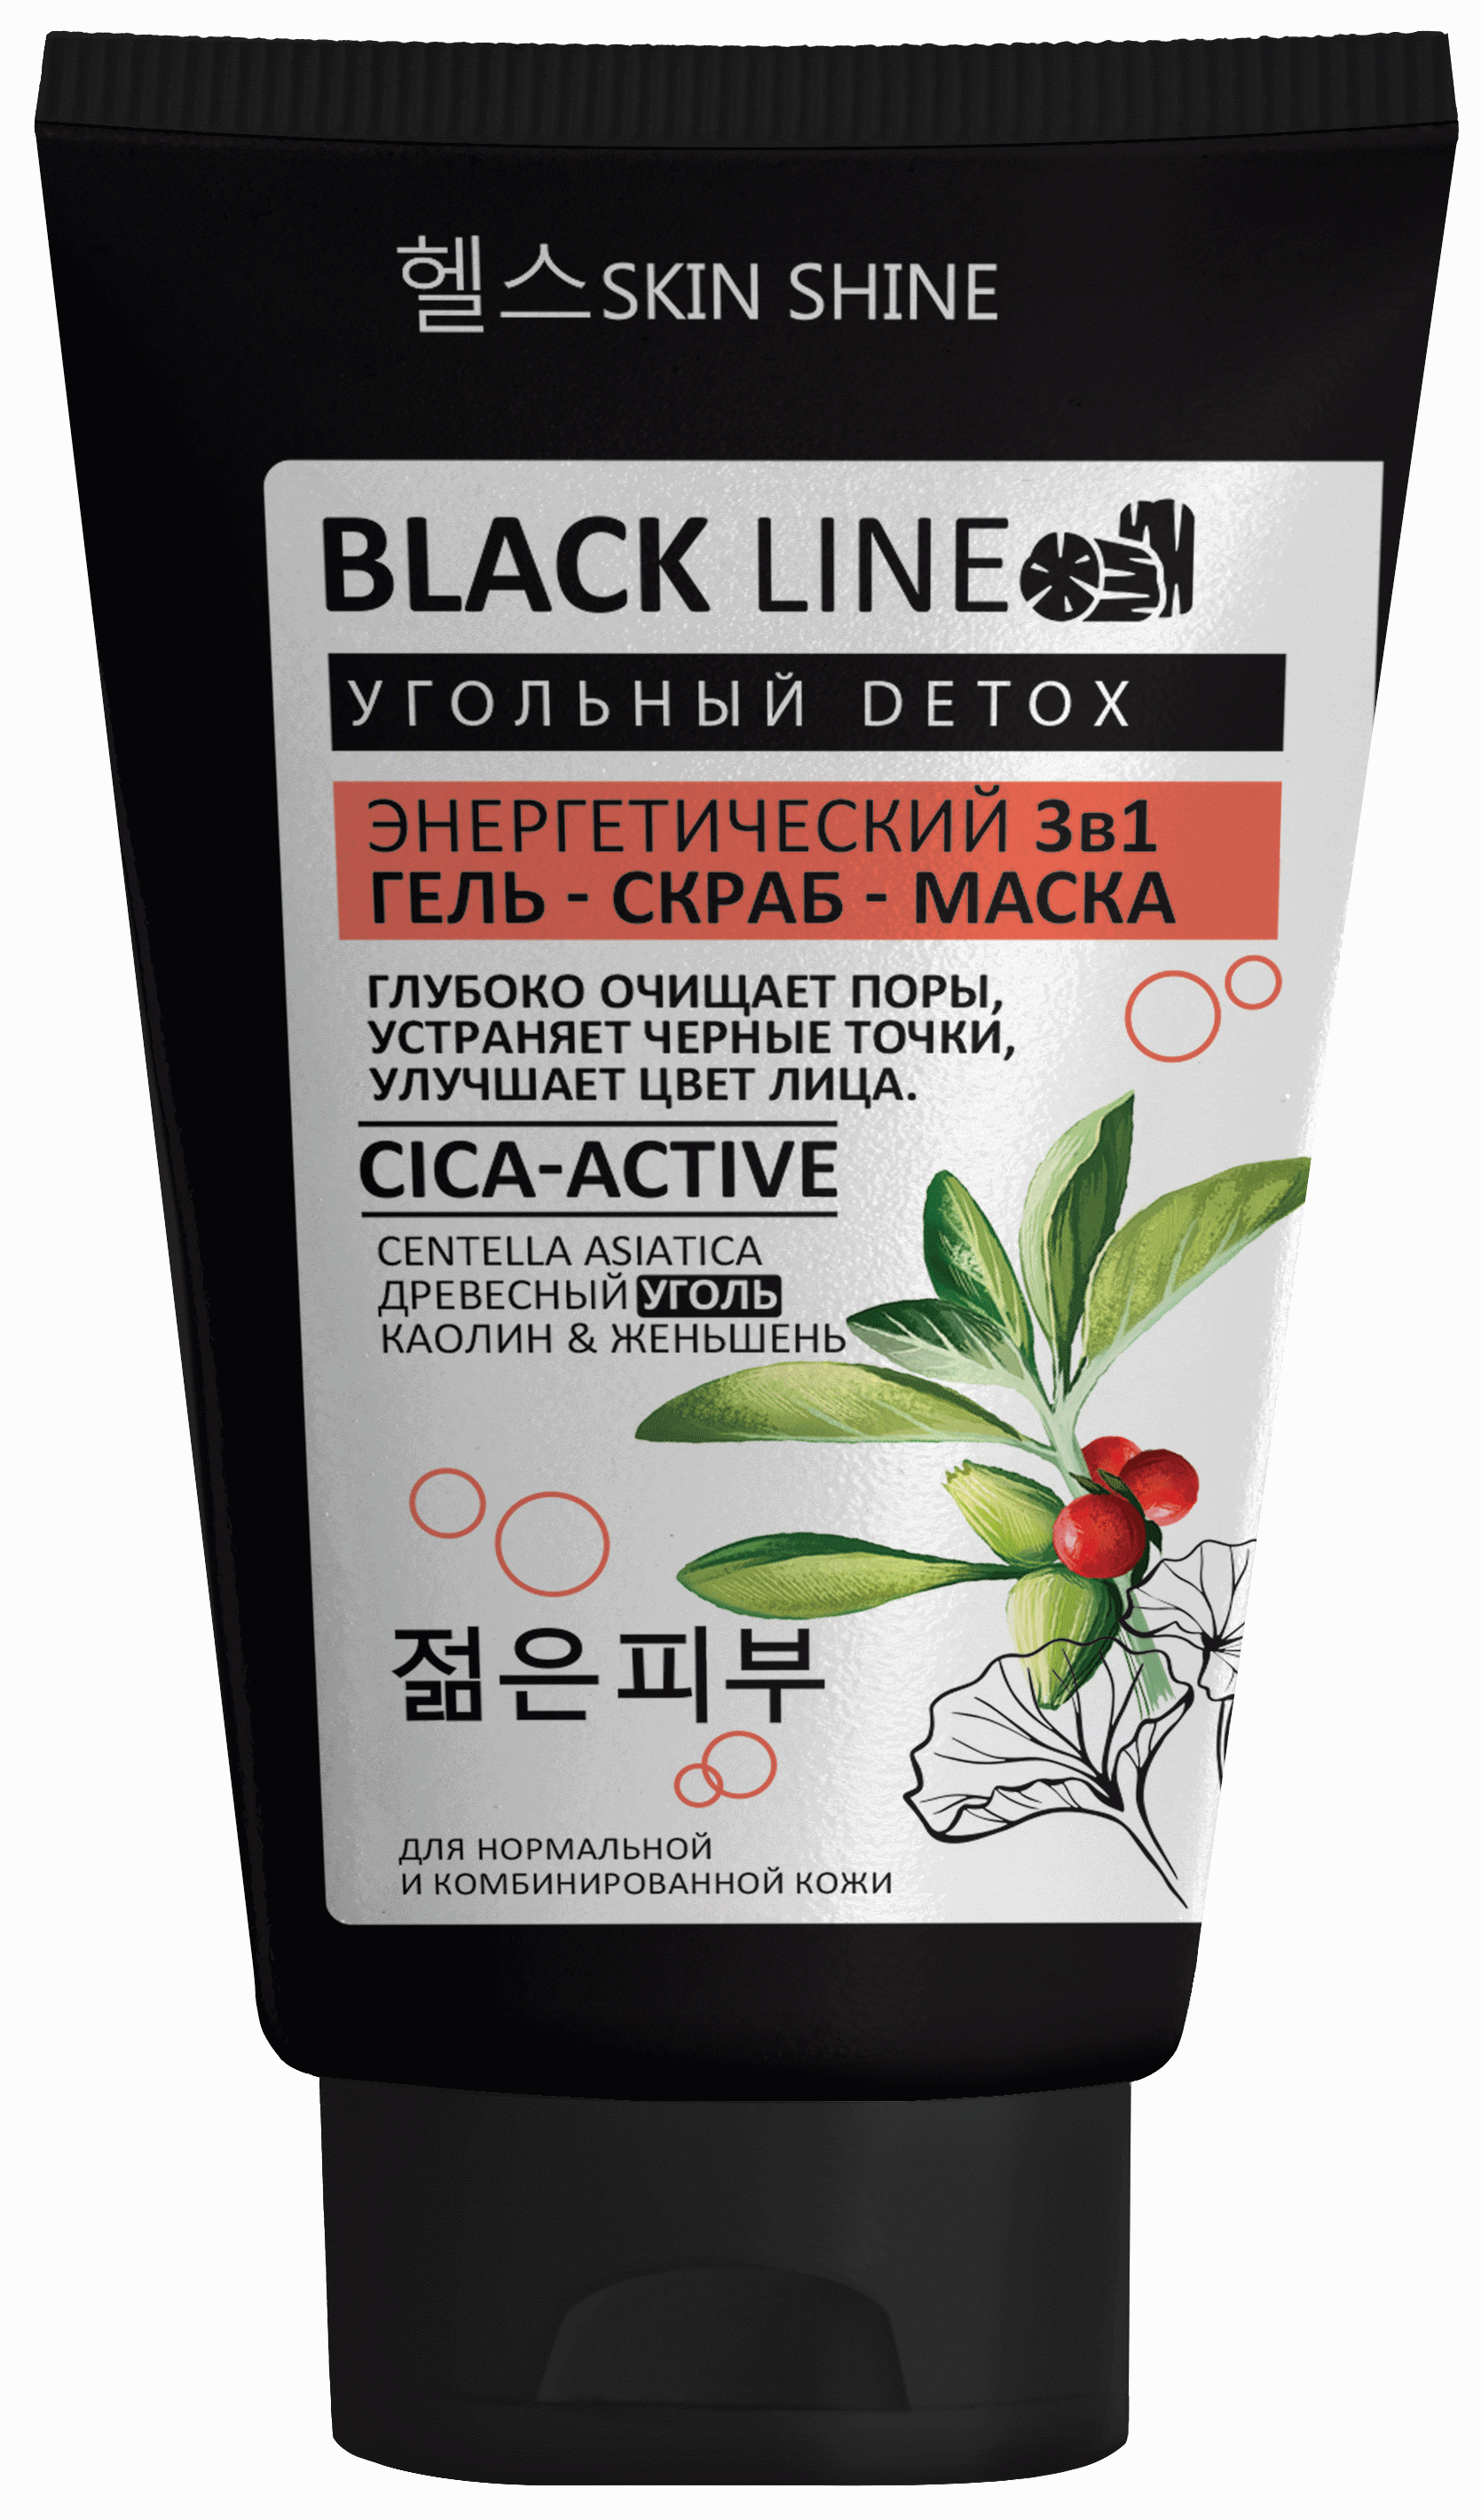 Картинка SKIN SHINE серии «BLACK LINE» Энергетический гель-скраб-маска  3 в1 для лица с древесным углем, центеллой азиатской, каолином и женьшенем, 150 мл BeautyConceptPro